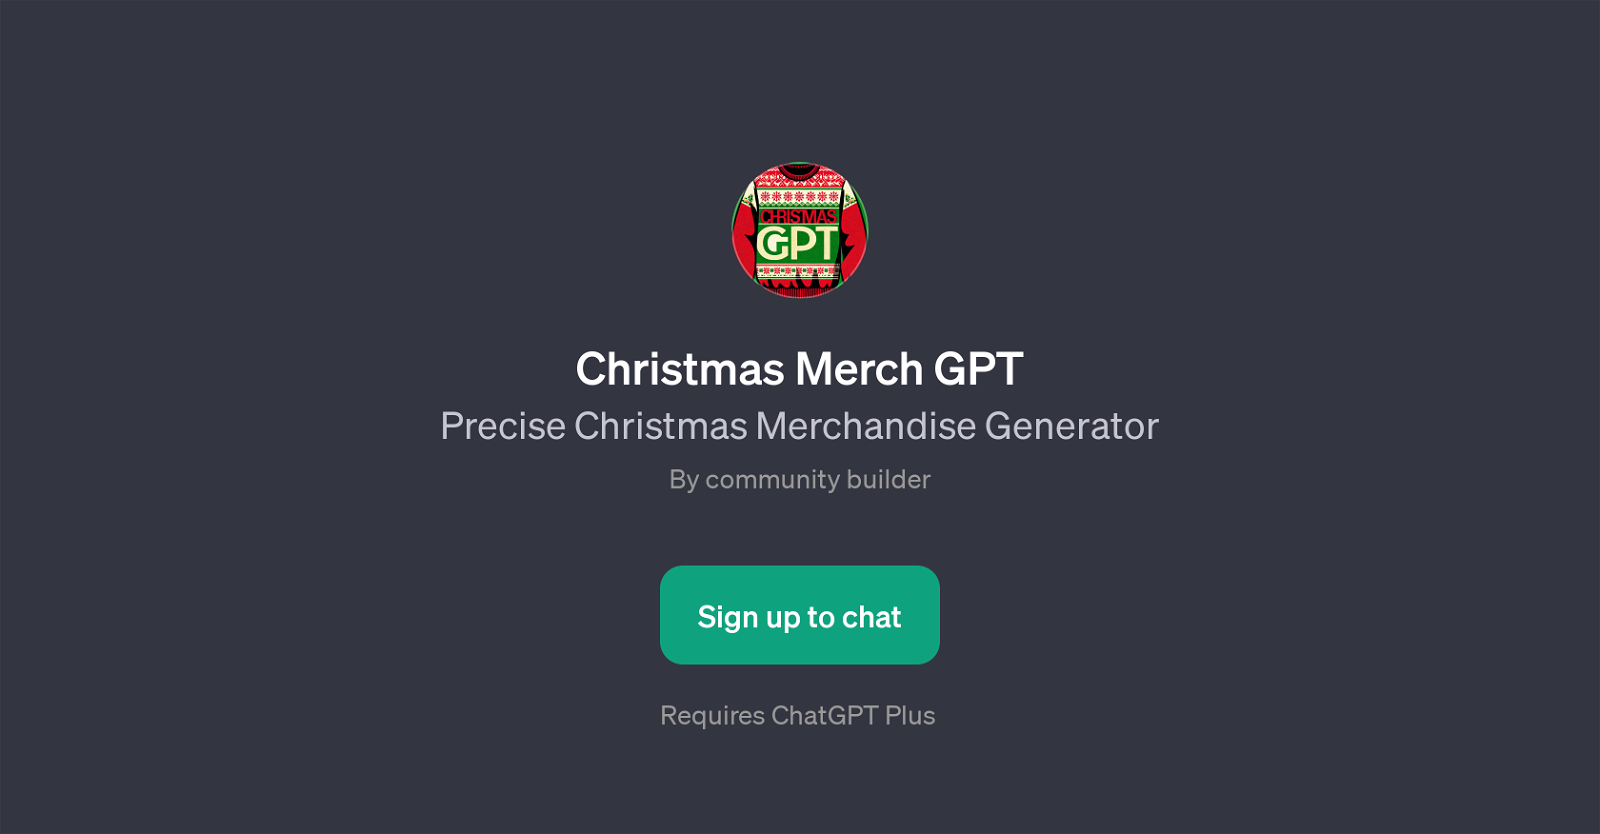 Christmas Merch GPT website